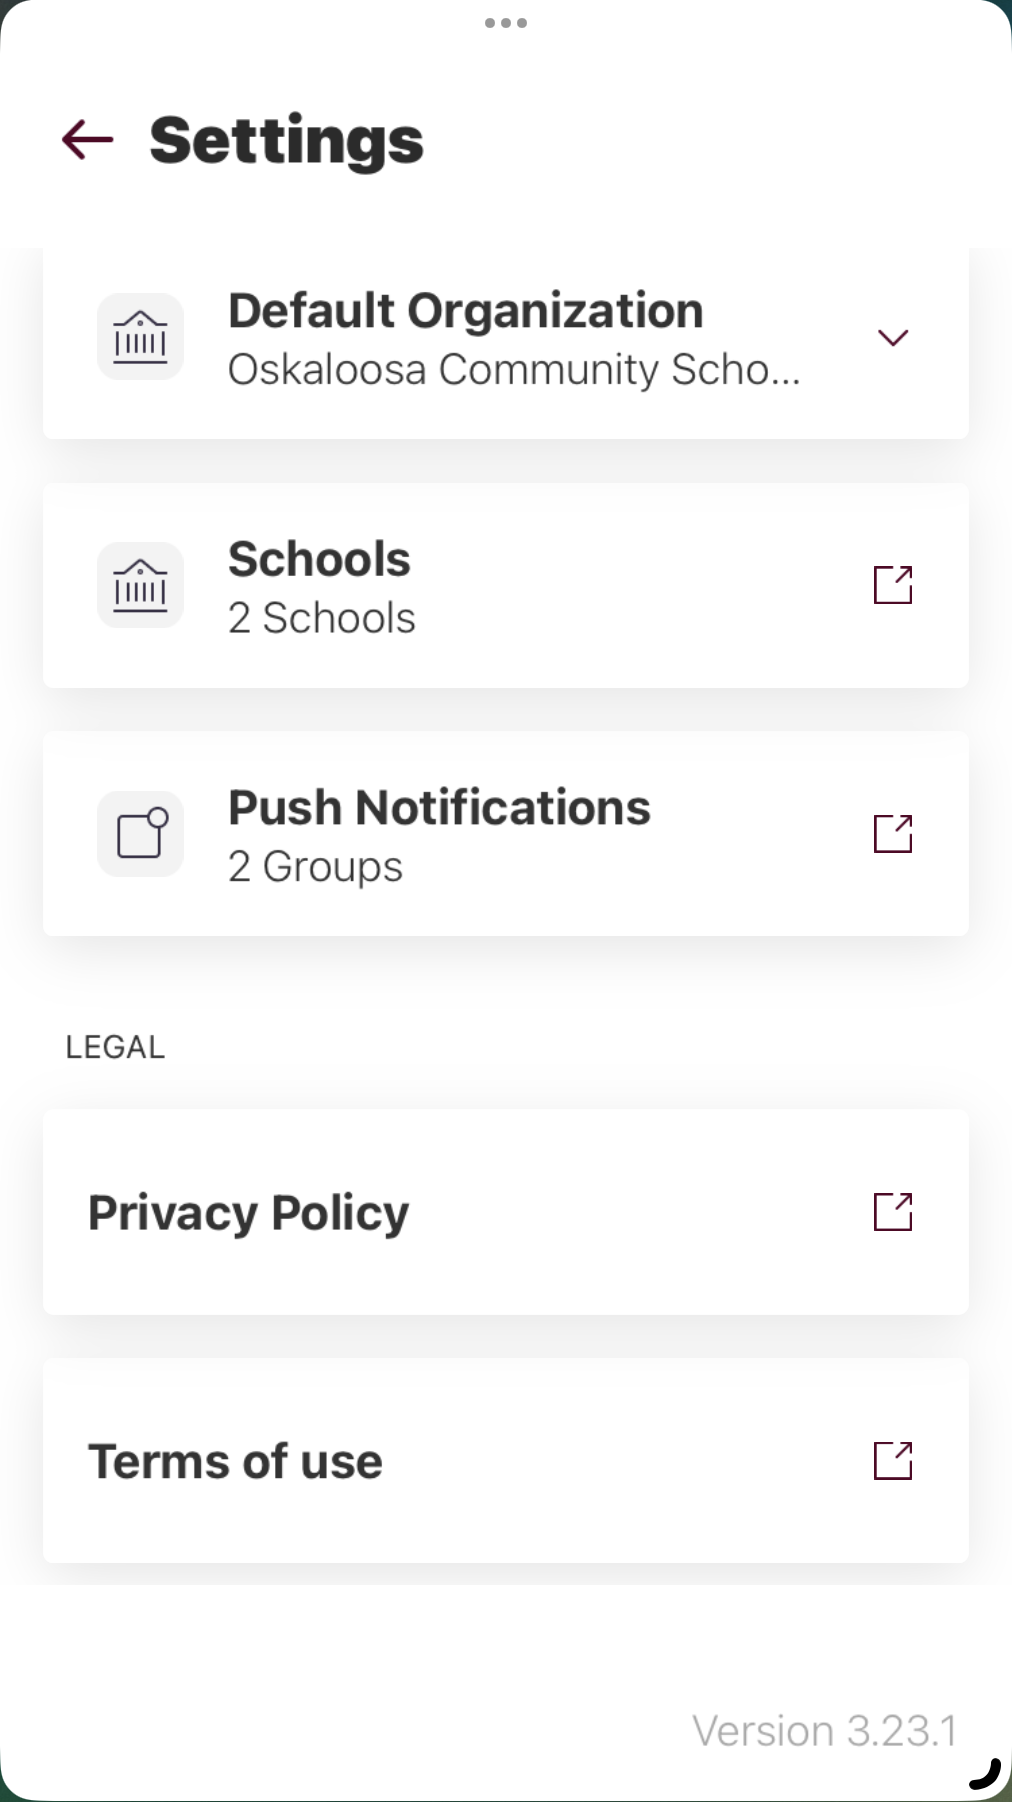 Mobile App settings screen